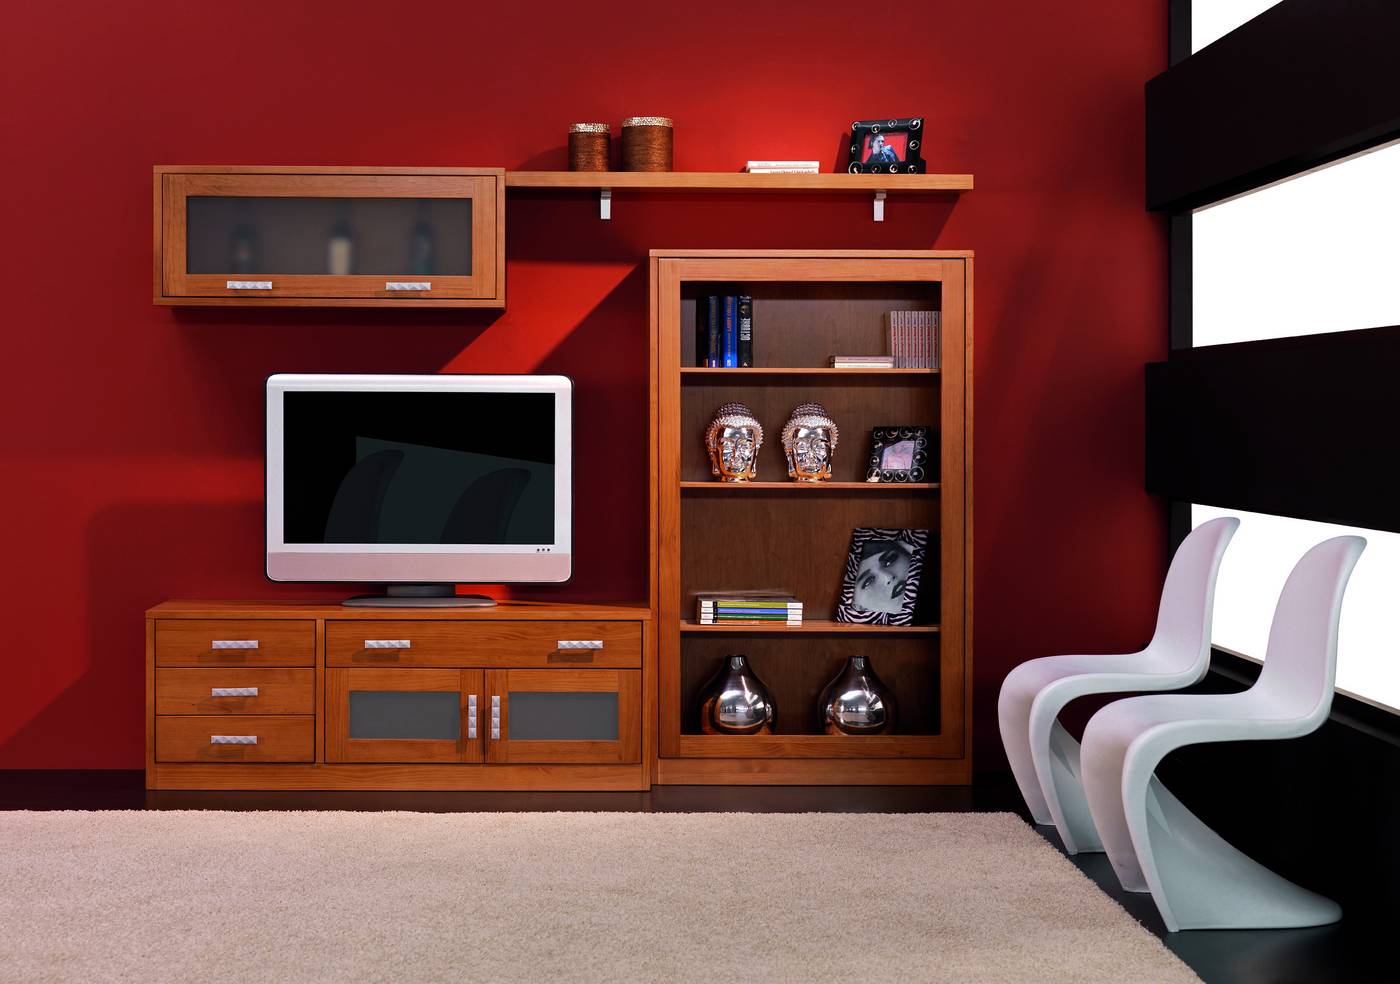 Composición de madera de pino: módulo bar + módulo TV + estante + librero